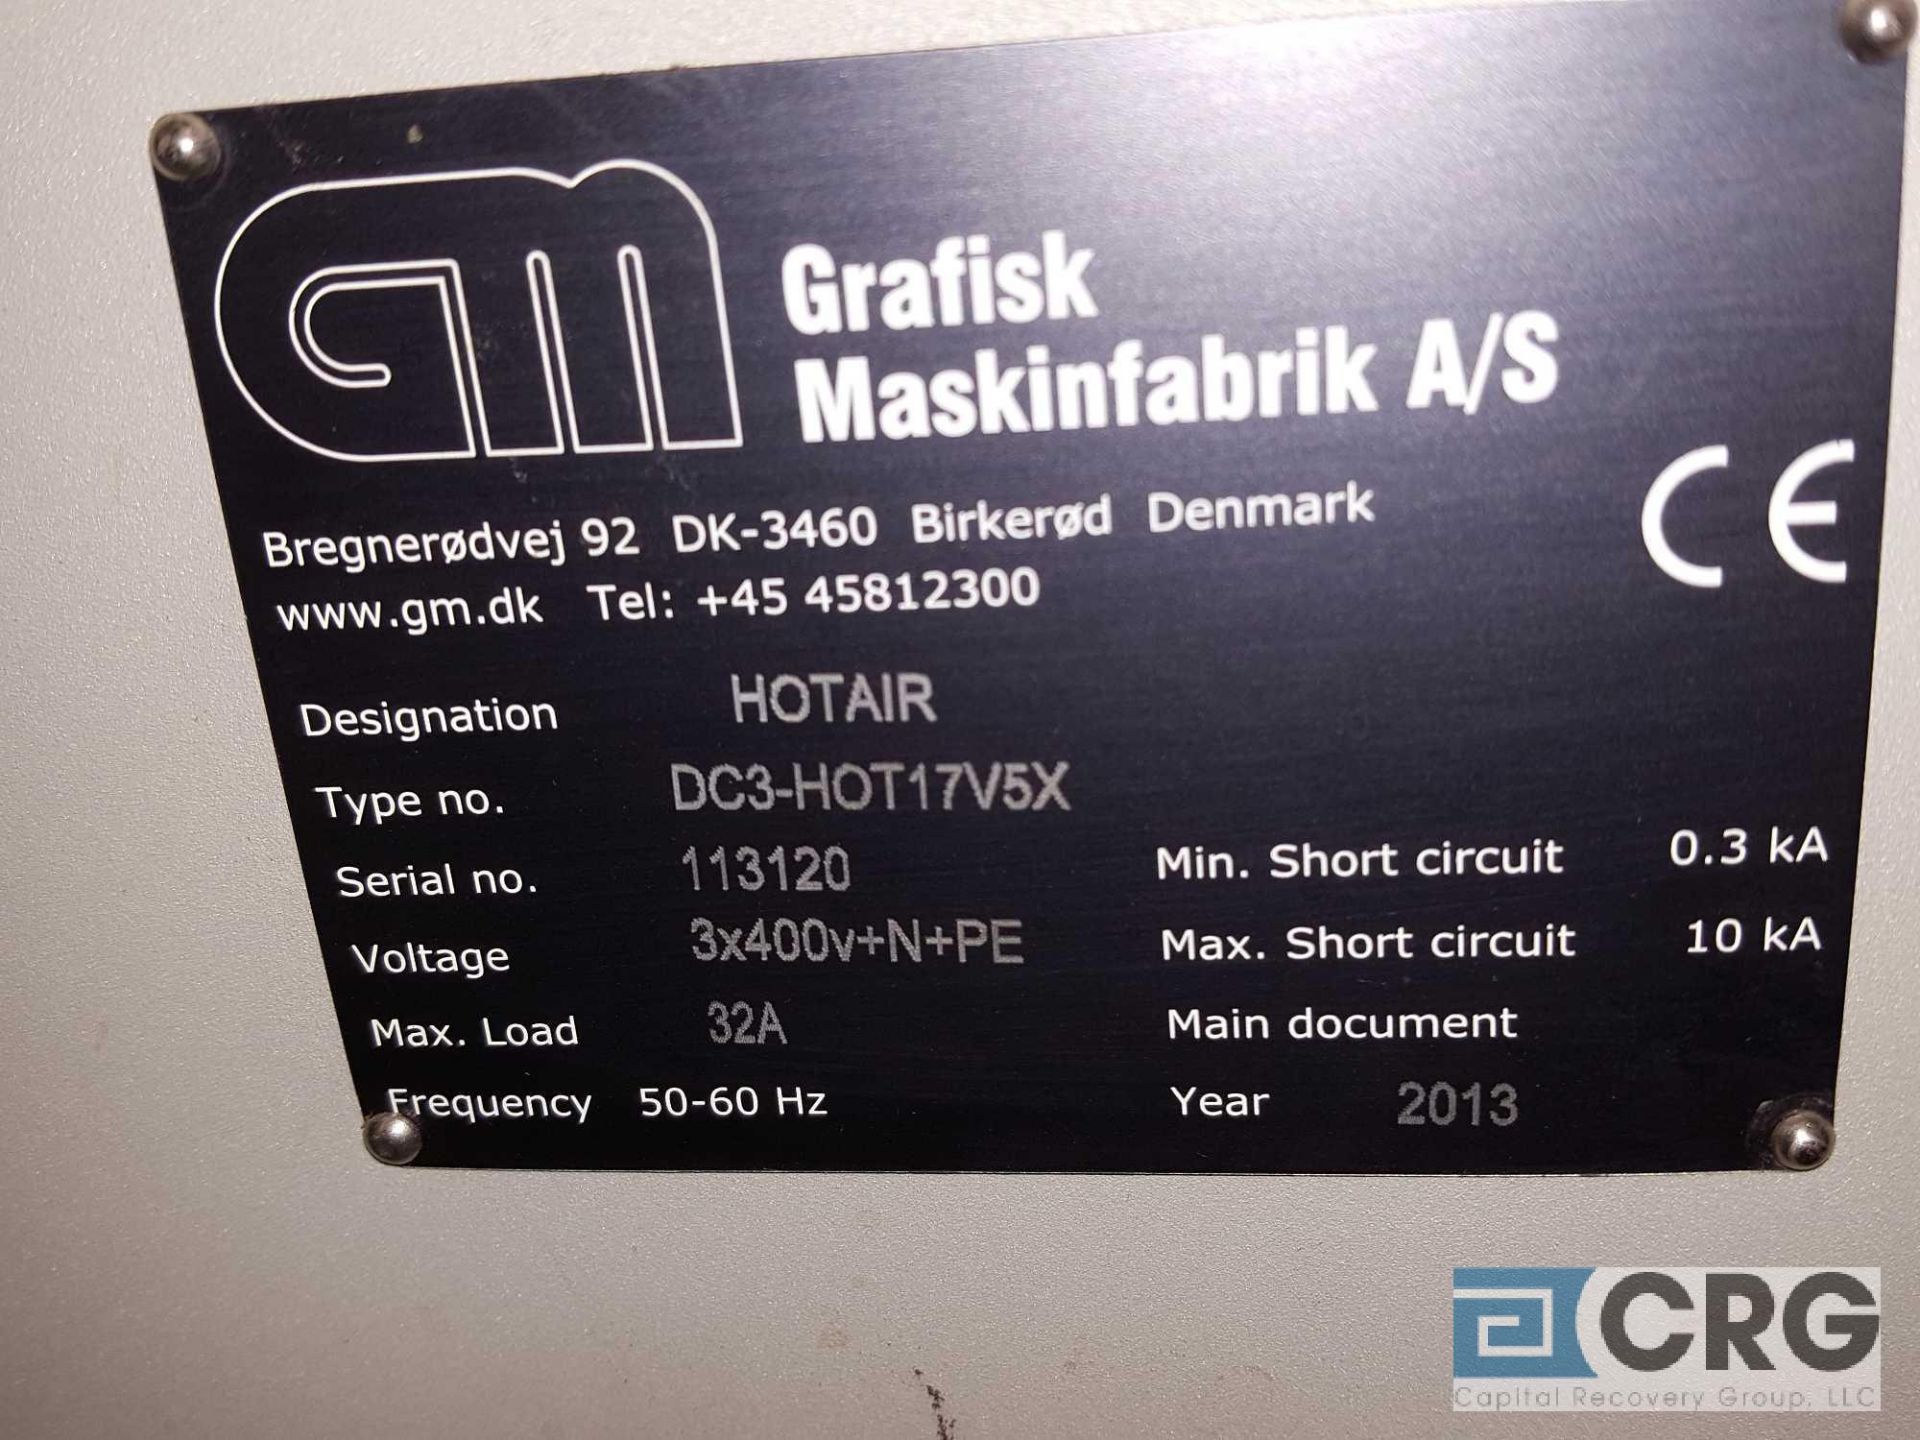 2013 Grafisk Maskinfabrik A/S finishing hot air dryer coating machine, type DC3-HOT17V5X, - Image 4 of 4